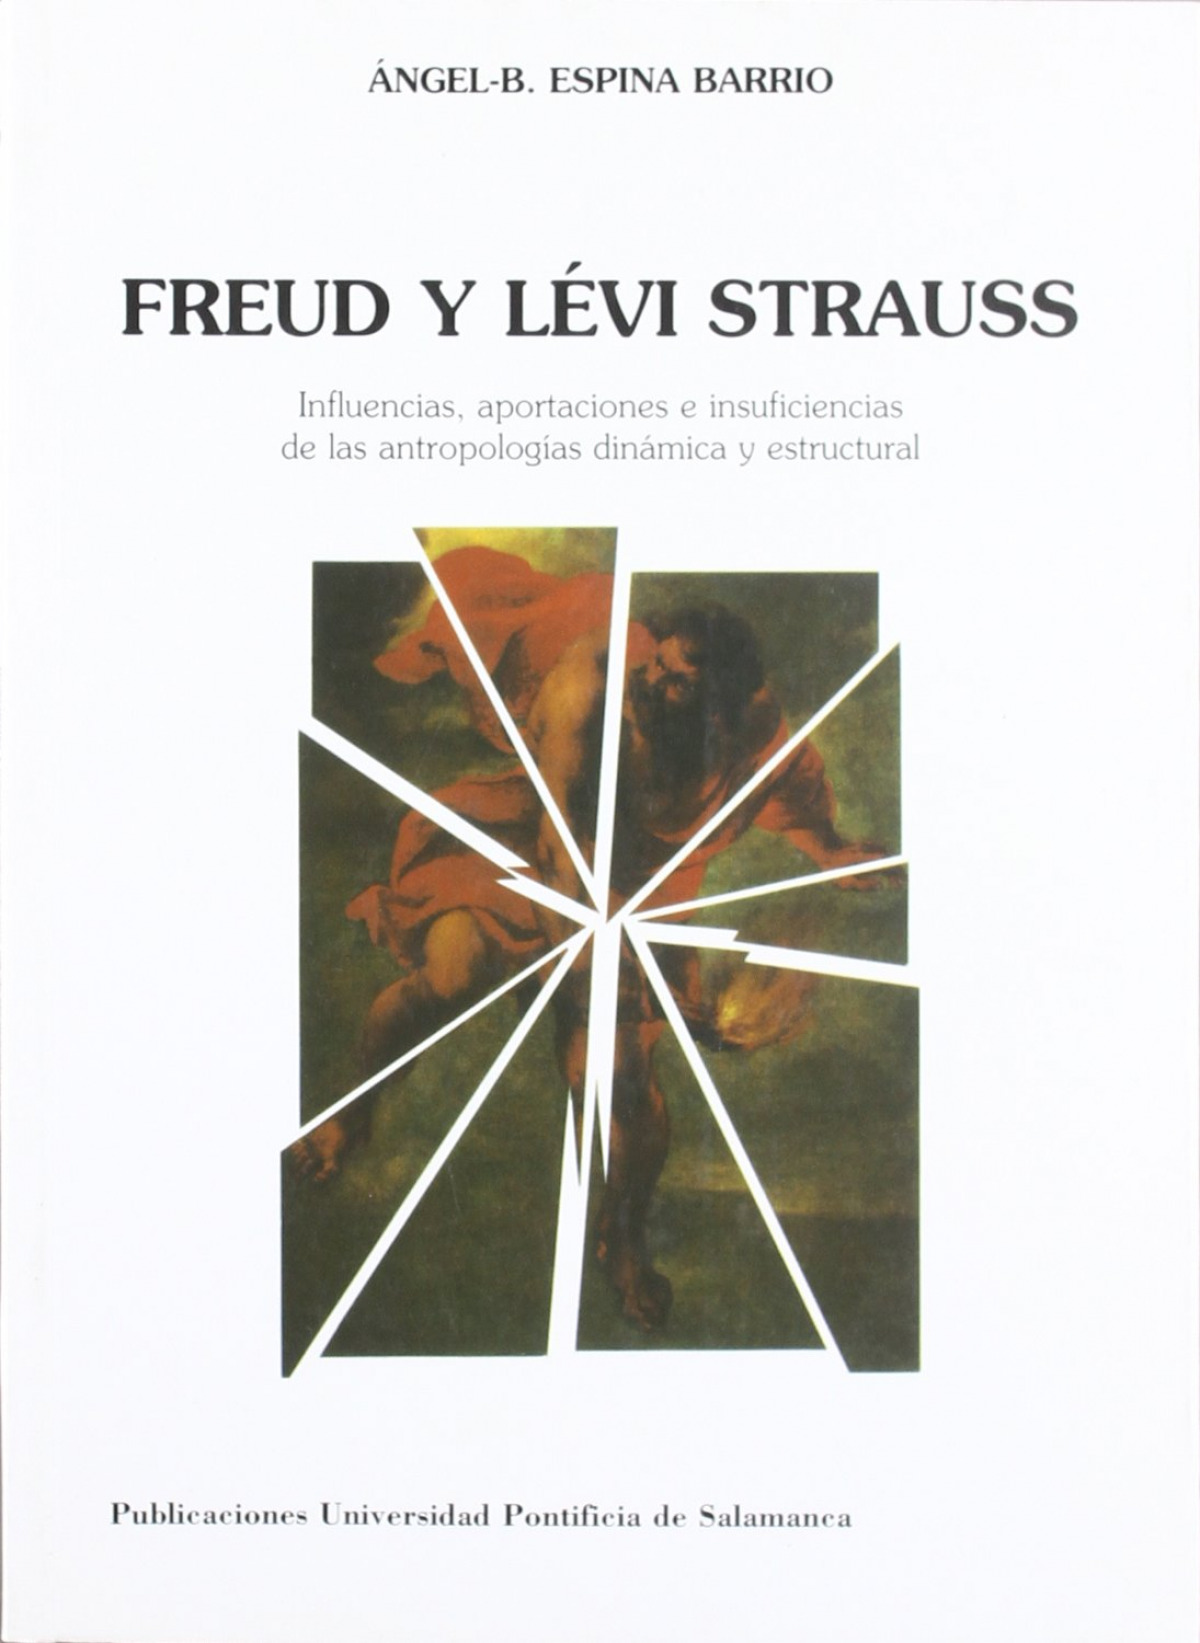 Freud y levi-strauss - Espina Barrio, Angel-b.